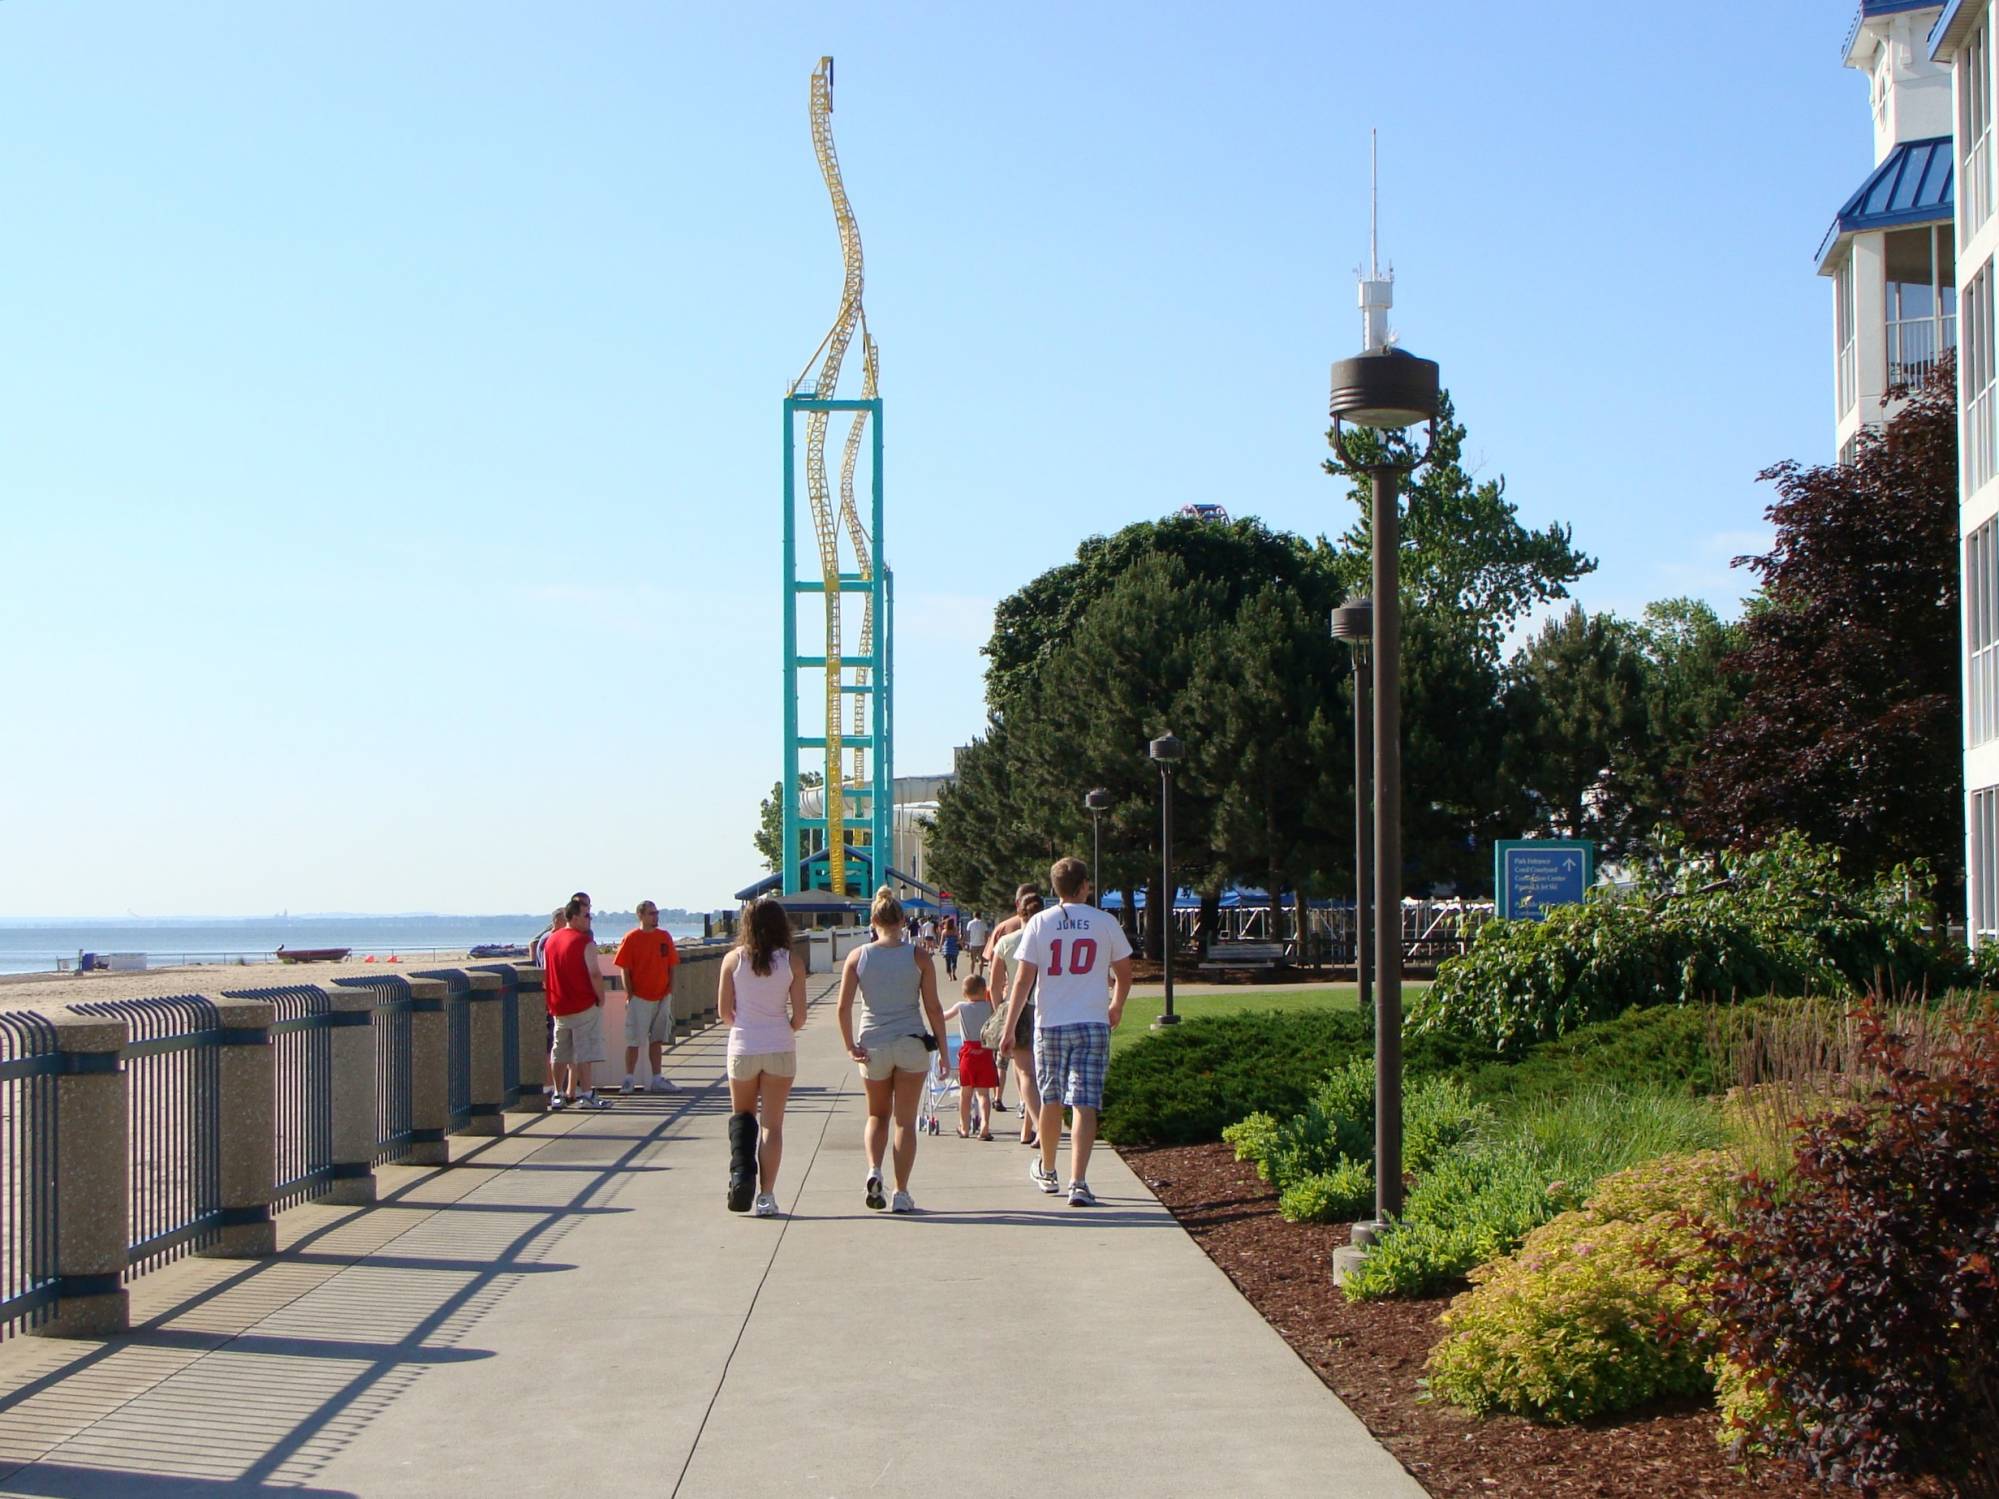 Boardwalk - walkway to park entrance